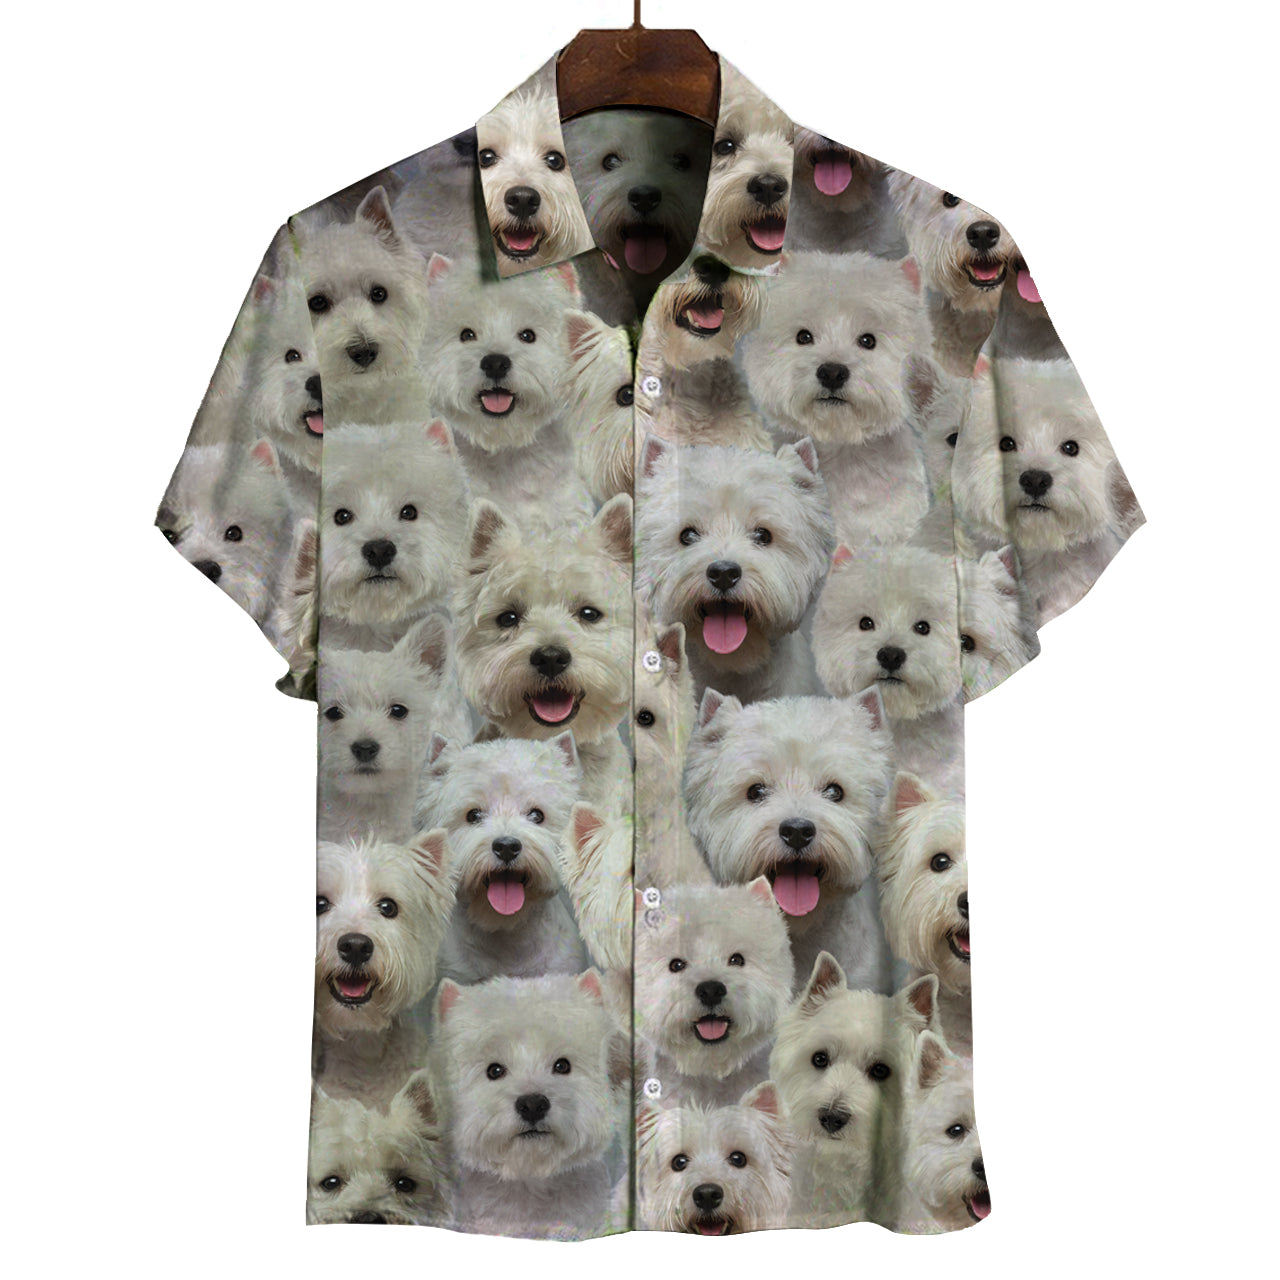 Sie werden einen Haufen West Highland White Terrier haben - Shirt V1